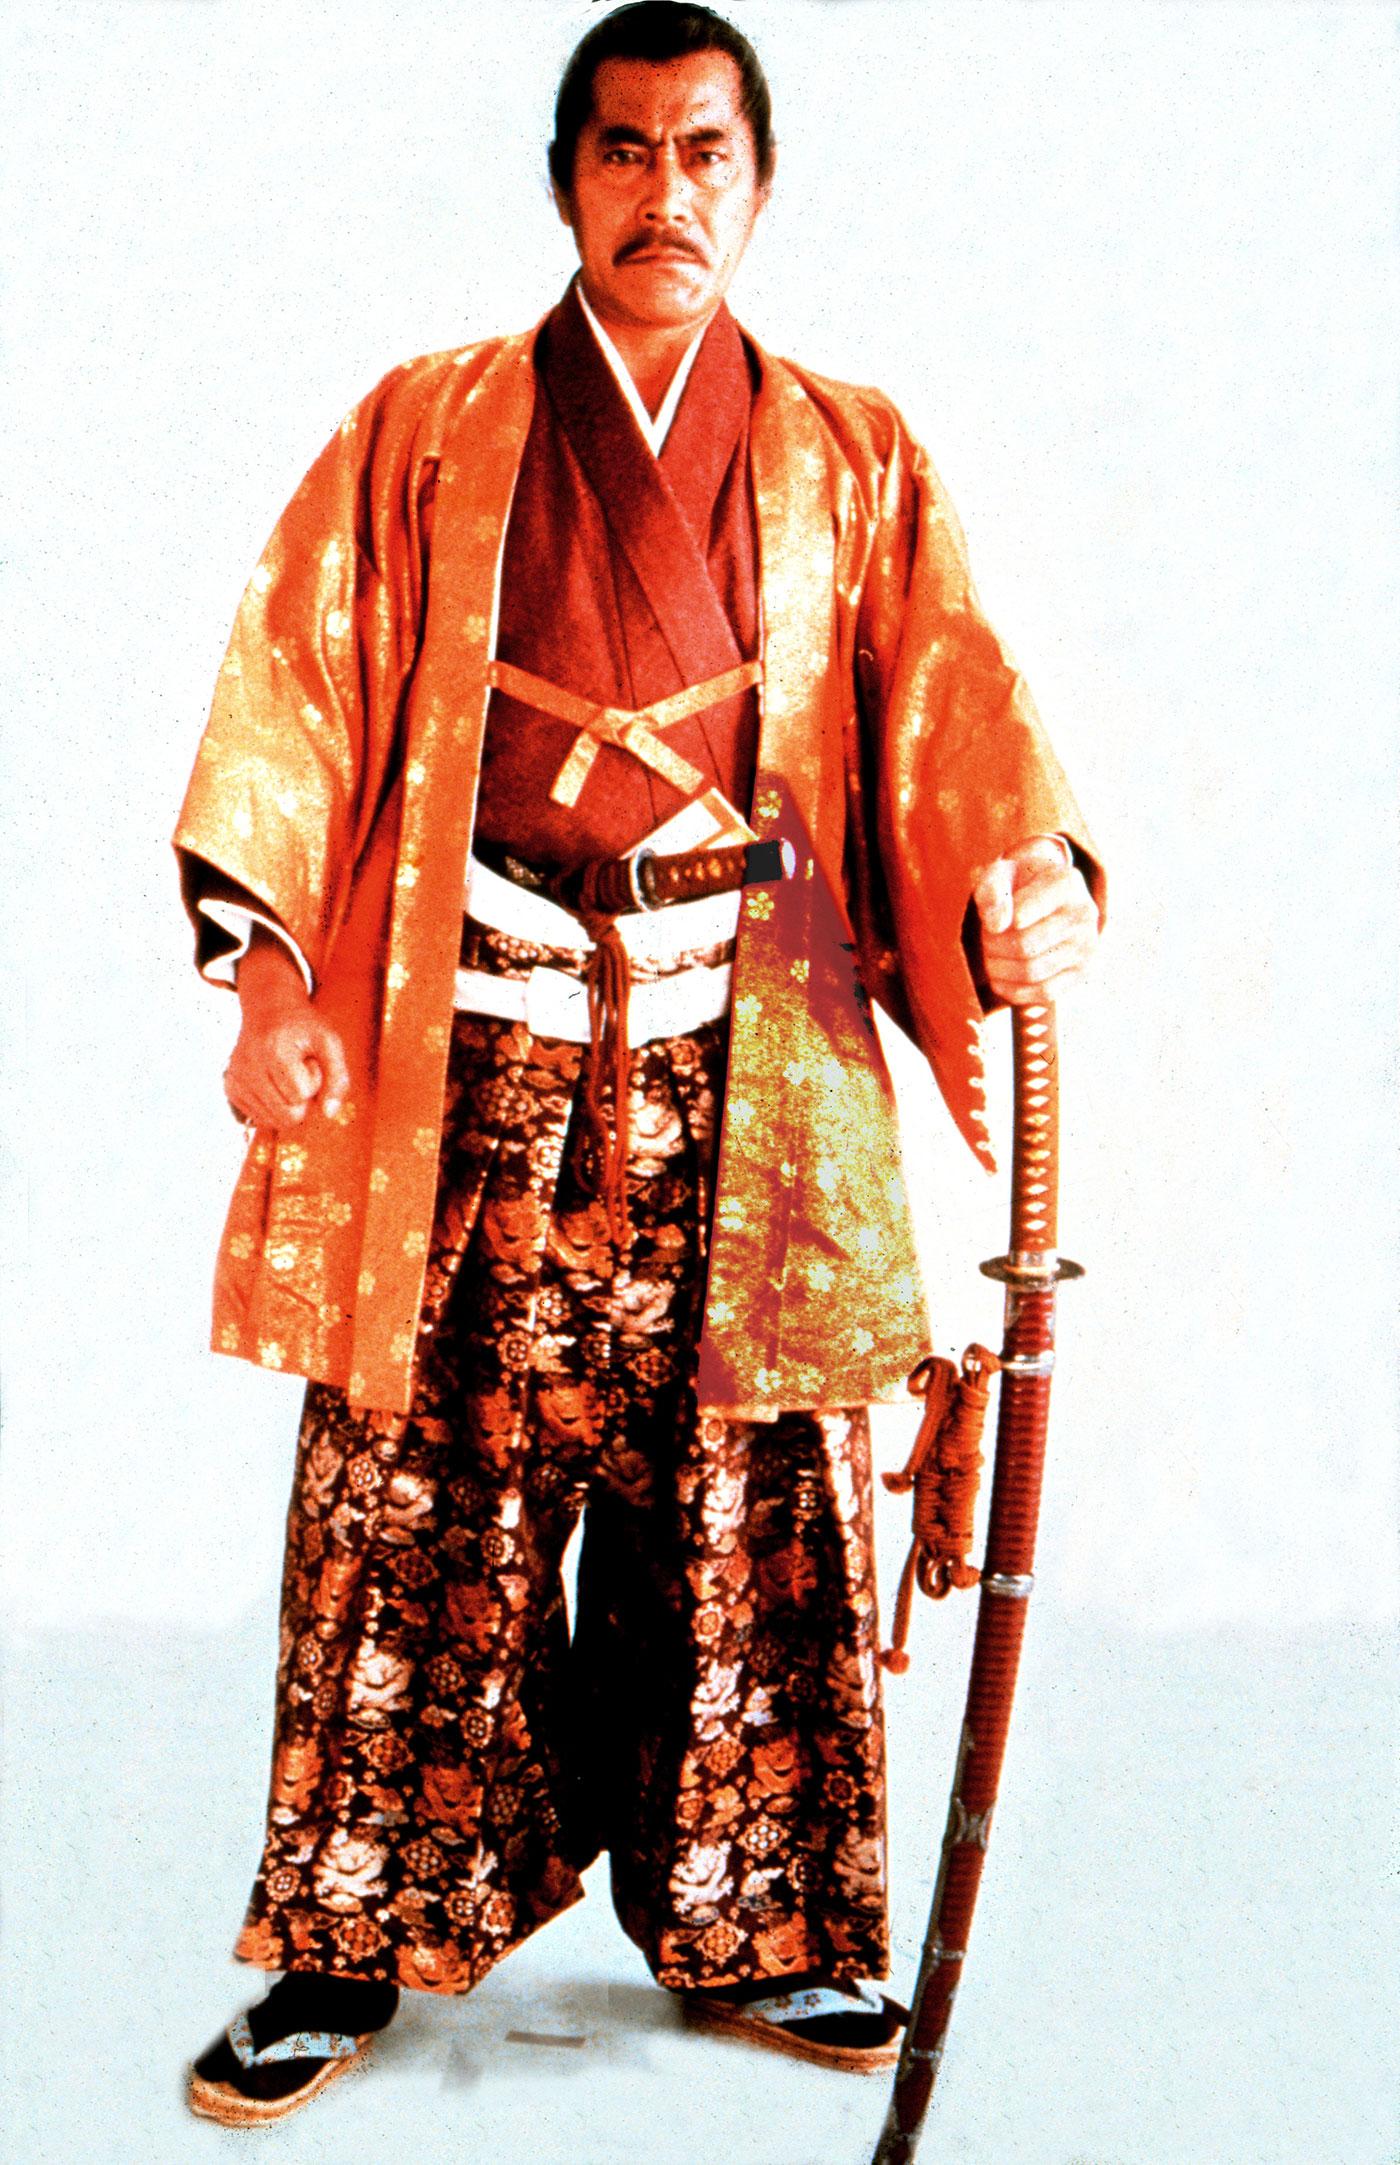 Det är oklart om samurajsvärdet som dödade Daigo Kashino var äkta. På bilden syns skådespelaren Toshiro Mifune som spealde samuraj i storfilmer som Rashomon och De sju samurajerna.